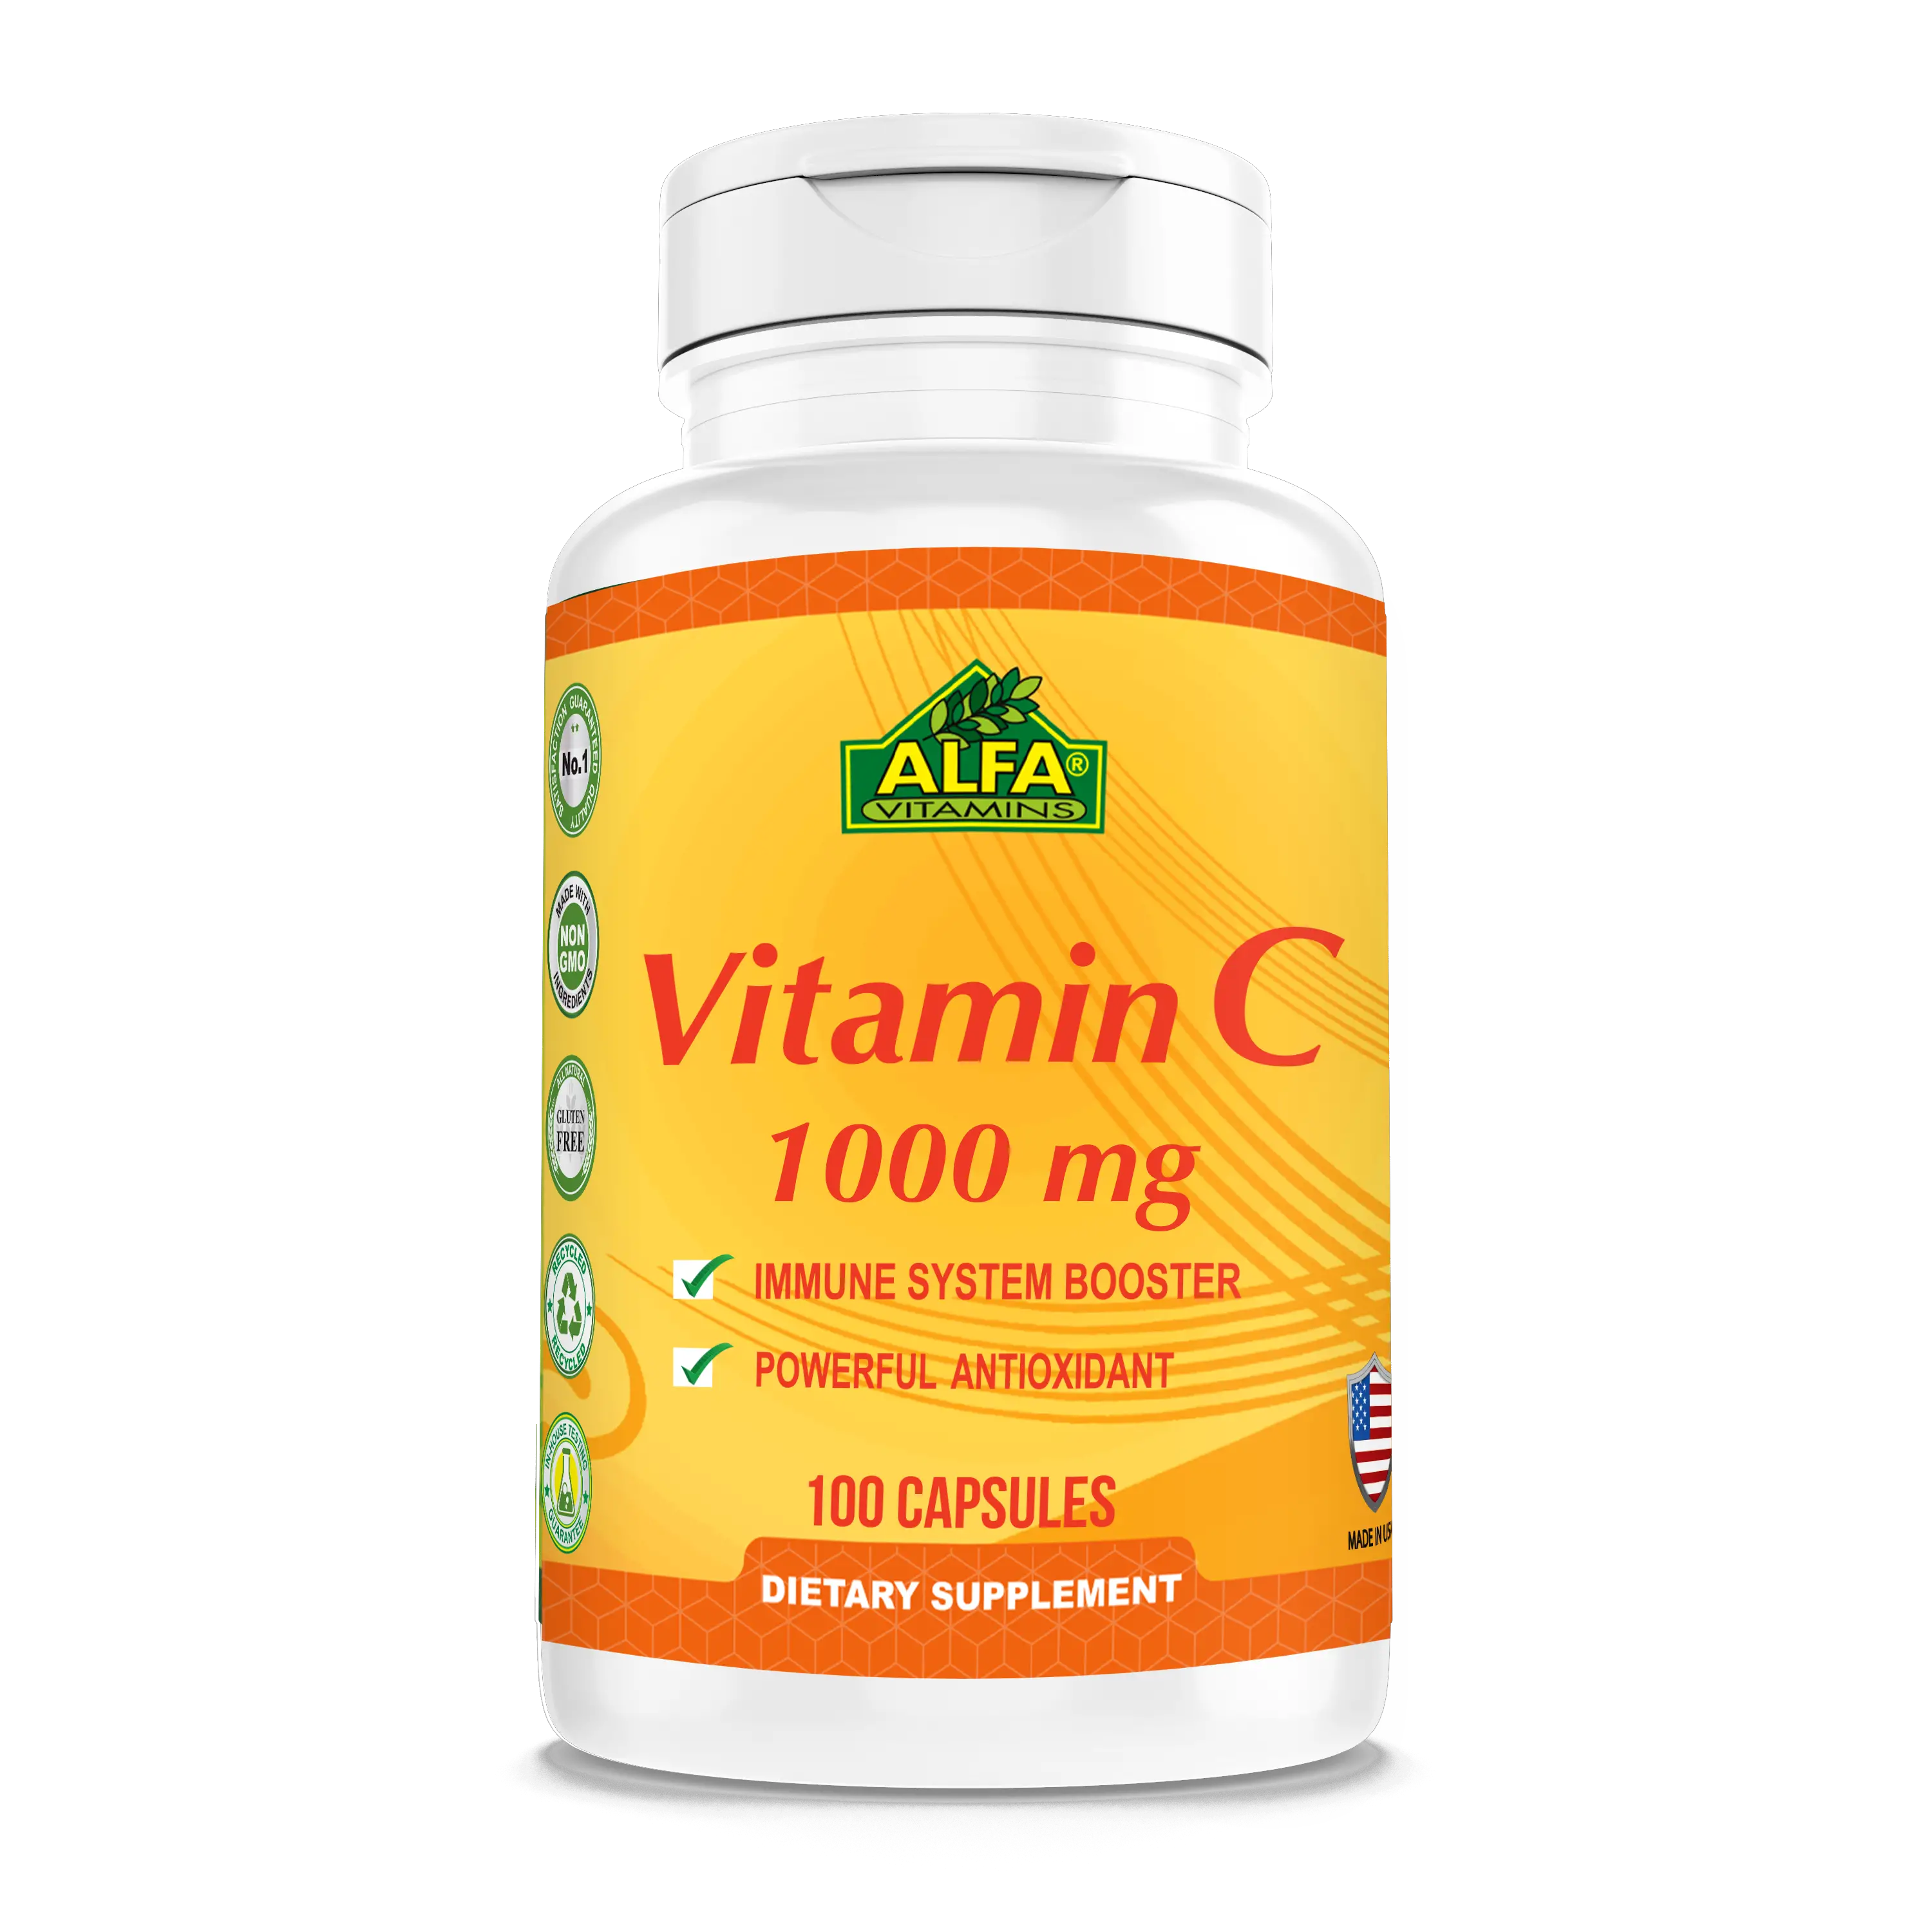 Alfa Vitamins® Vitamin C 1,000 mg for Immune support